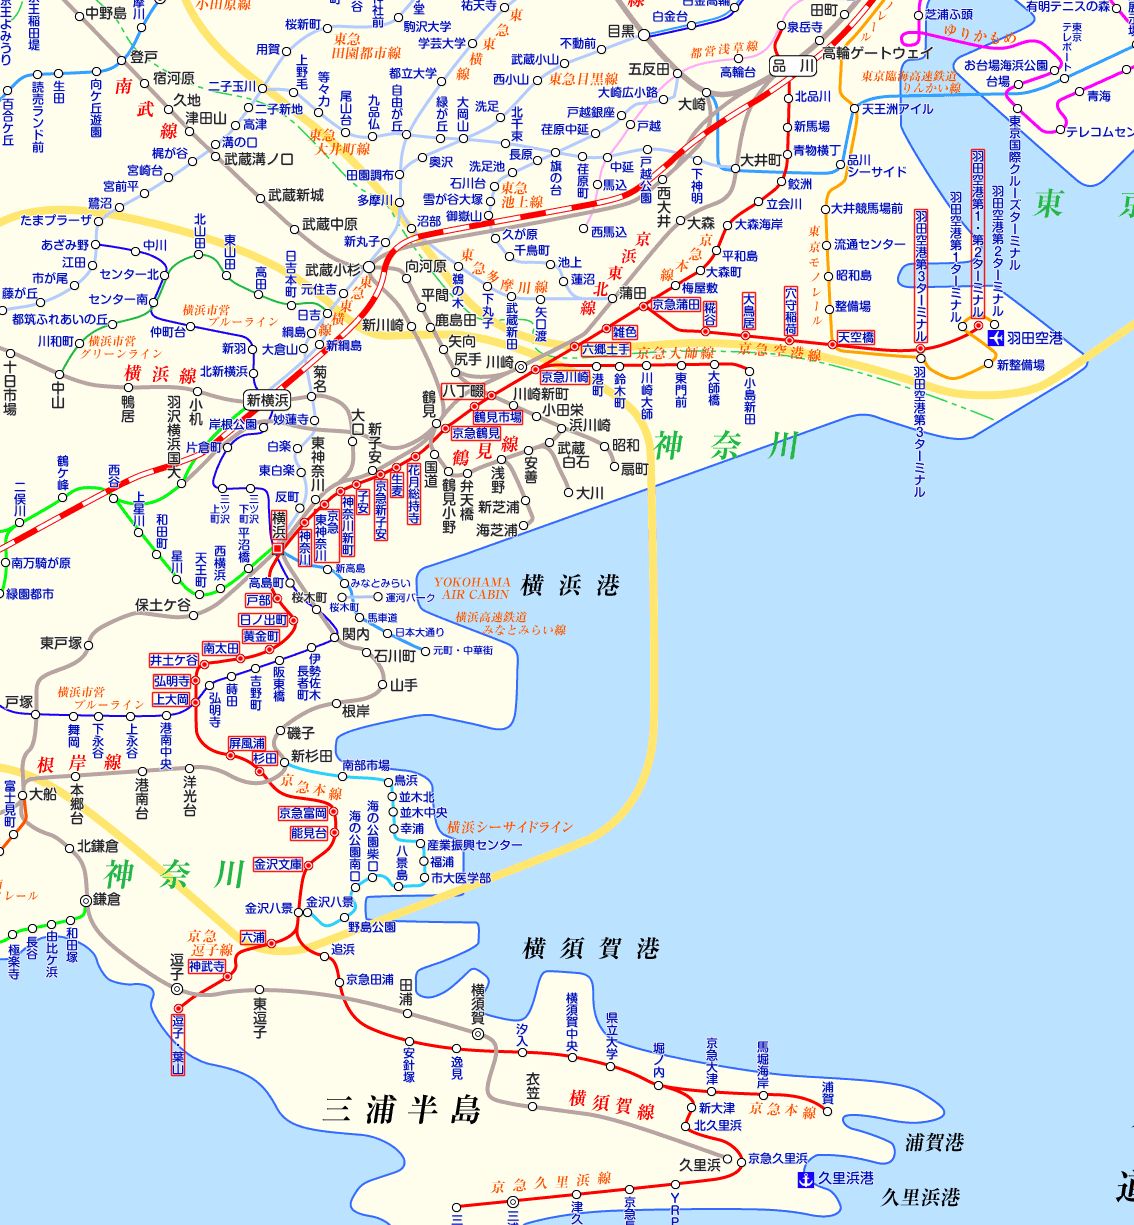 京急線 羽田空港行き（上り）の路線図